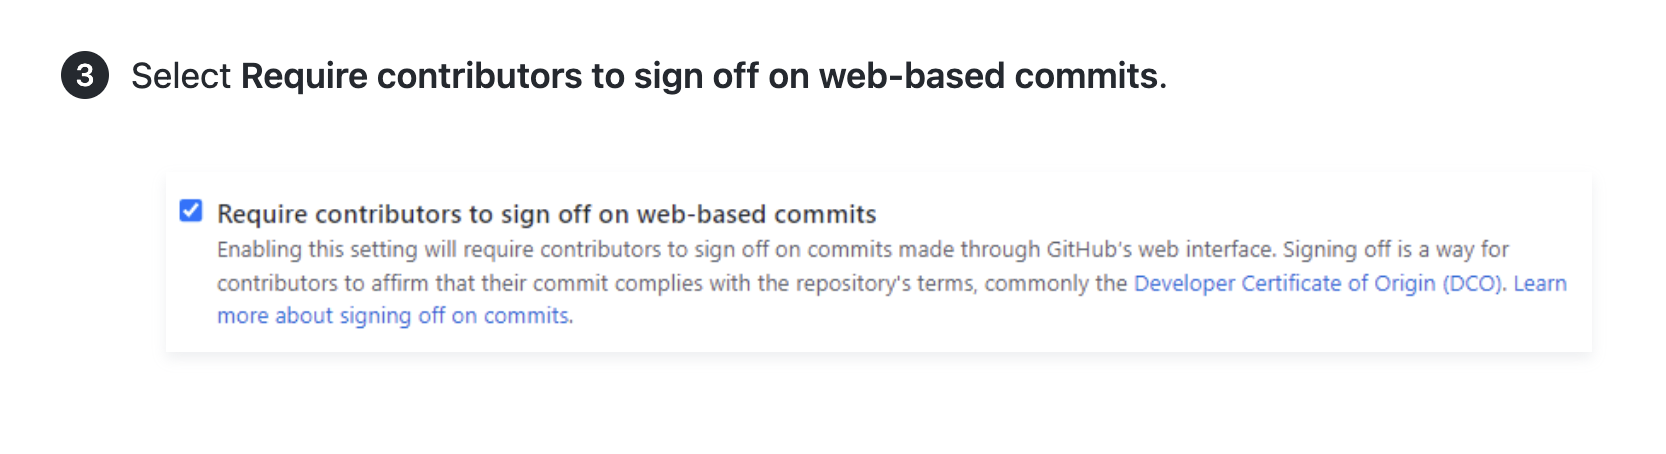 Web ベースのコミットをサインオフするように共同作成者に要求するための指示と UI のスクリーンショットを示す記事のスクリーンショット。